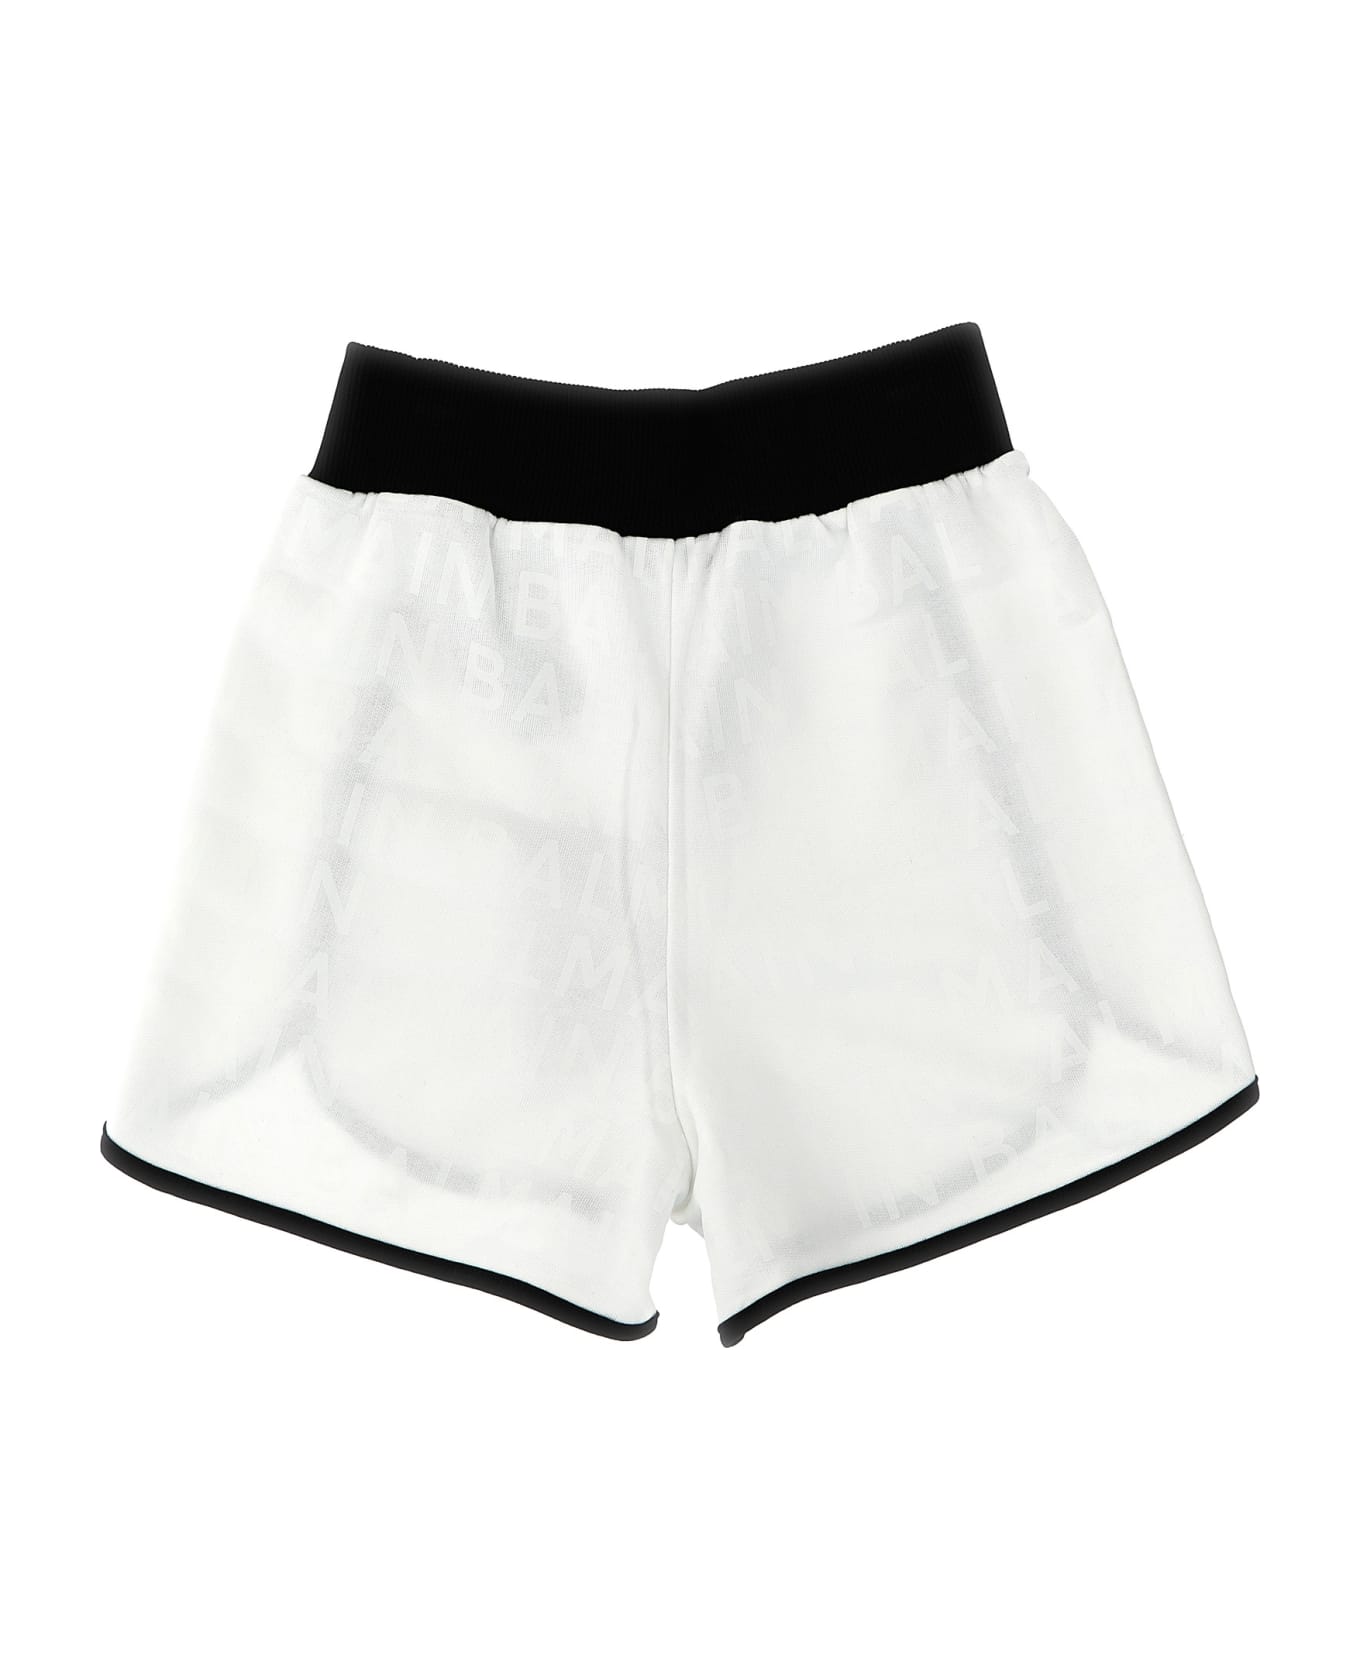 Balmain Logo Shorts - White/Black ボトムス